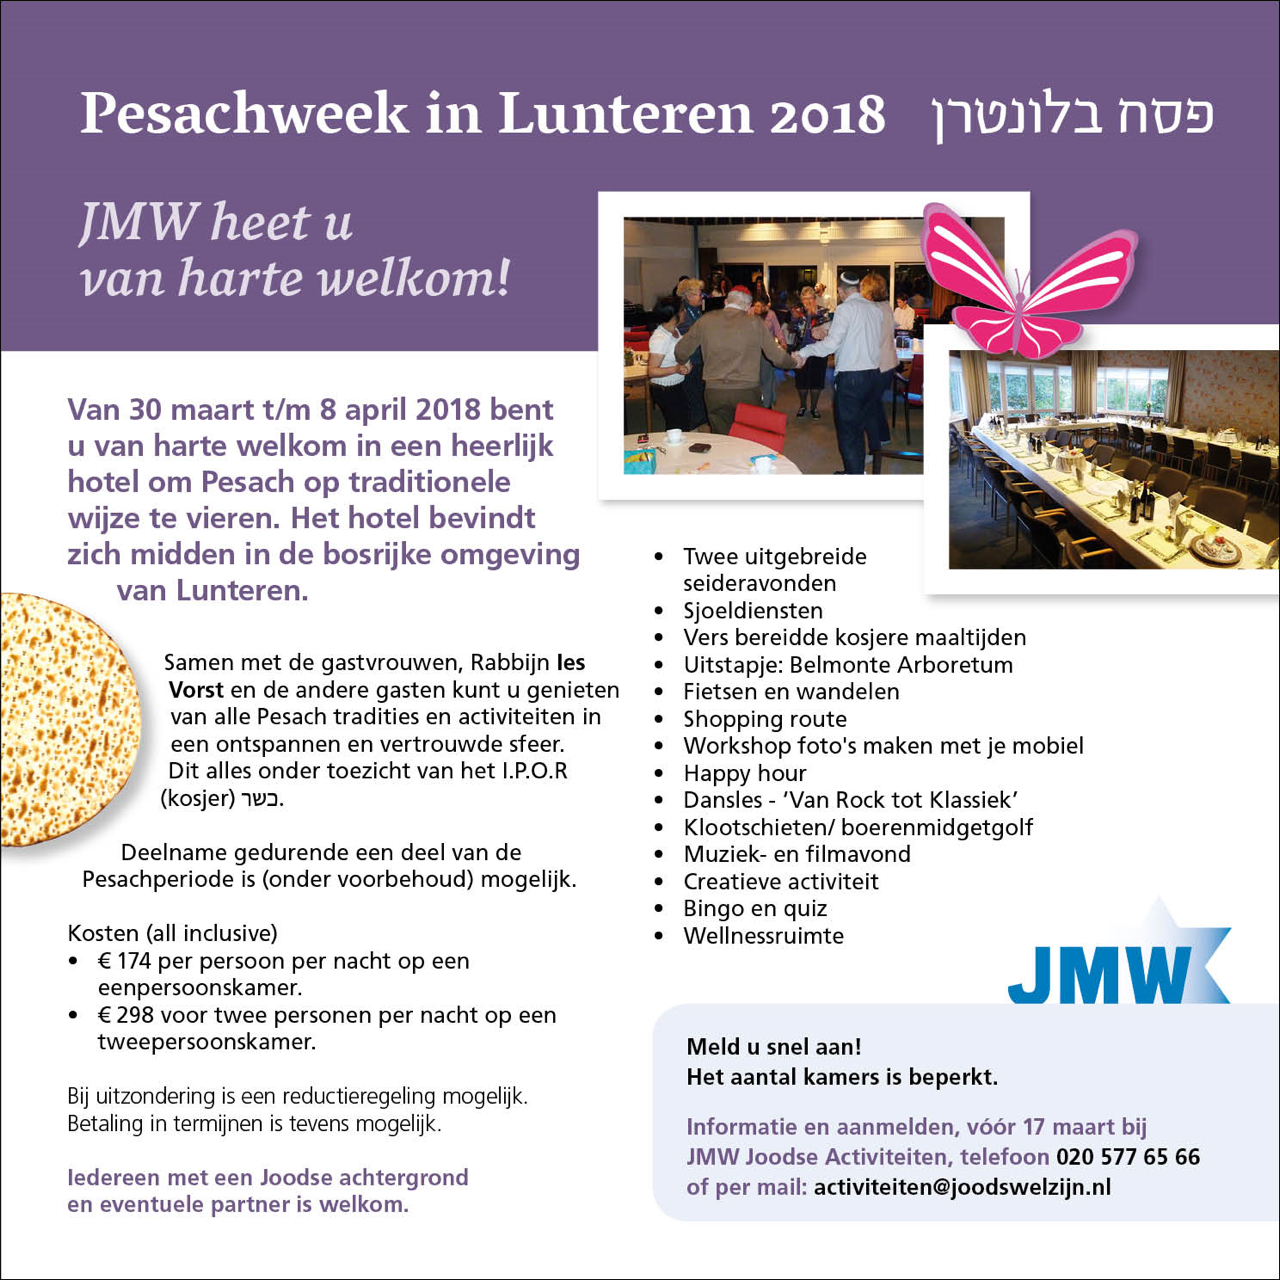 Pesachweek in Lunteren 2018